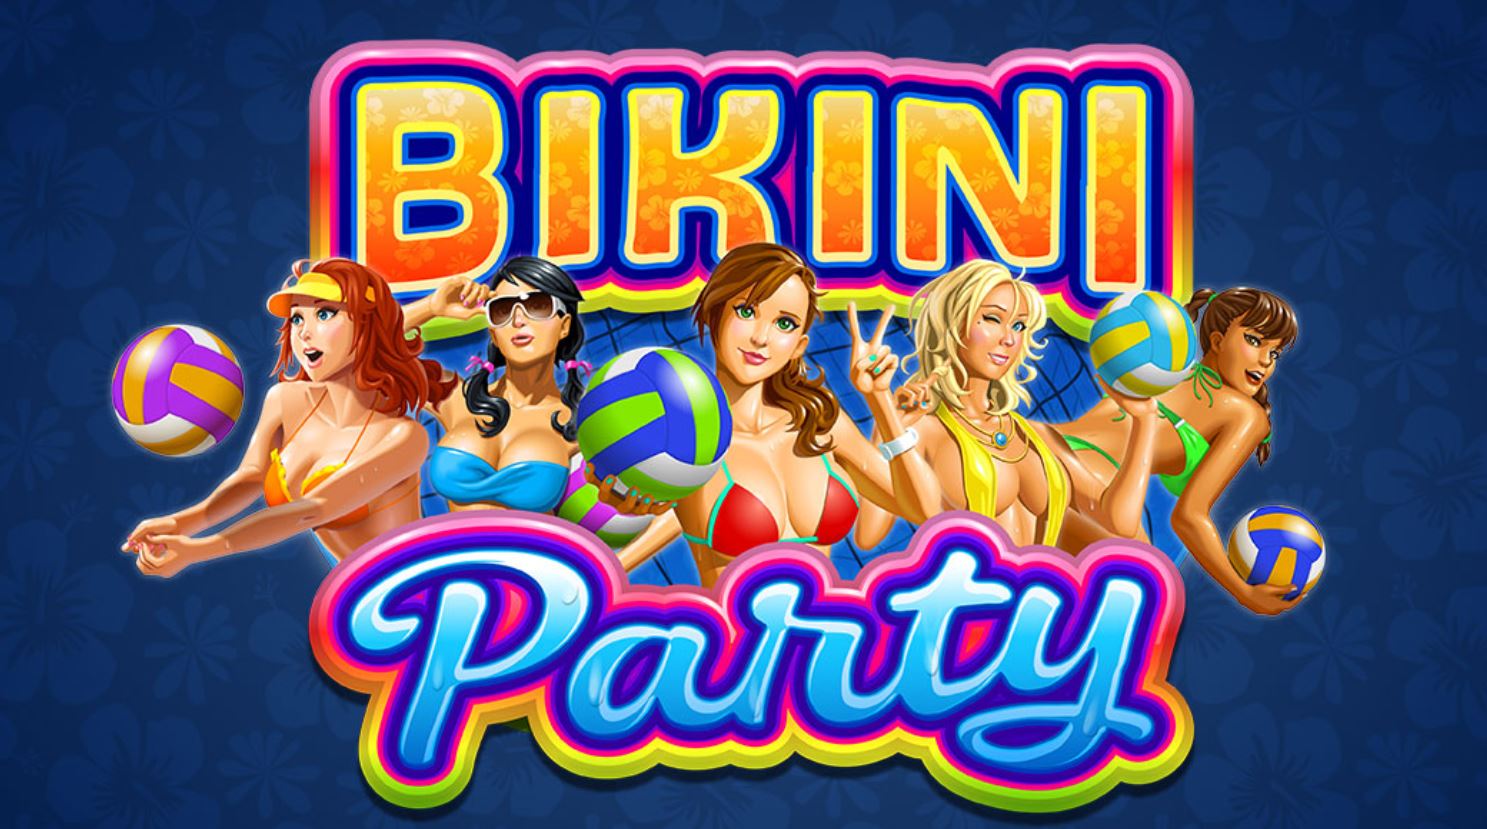 สล็อตMG Pay69slot -ค่ายเกม MG bikini party - เรียนรู้วิธีการเอาชนะสล็อตภายใน 5 นาที 31